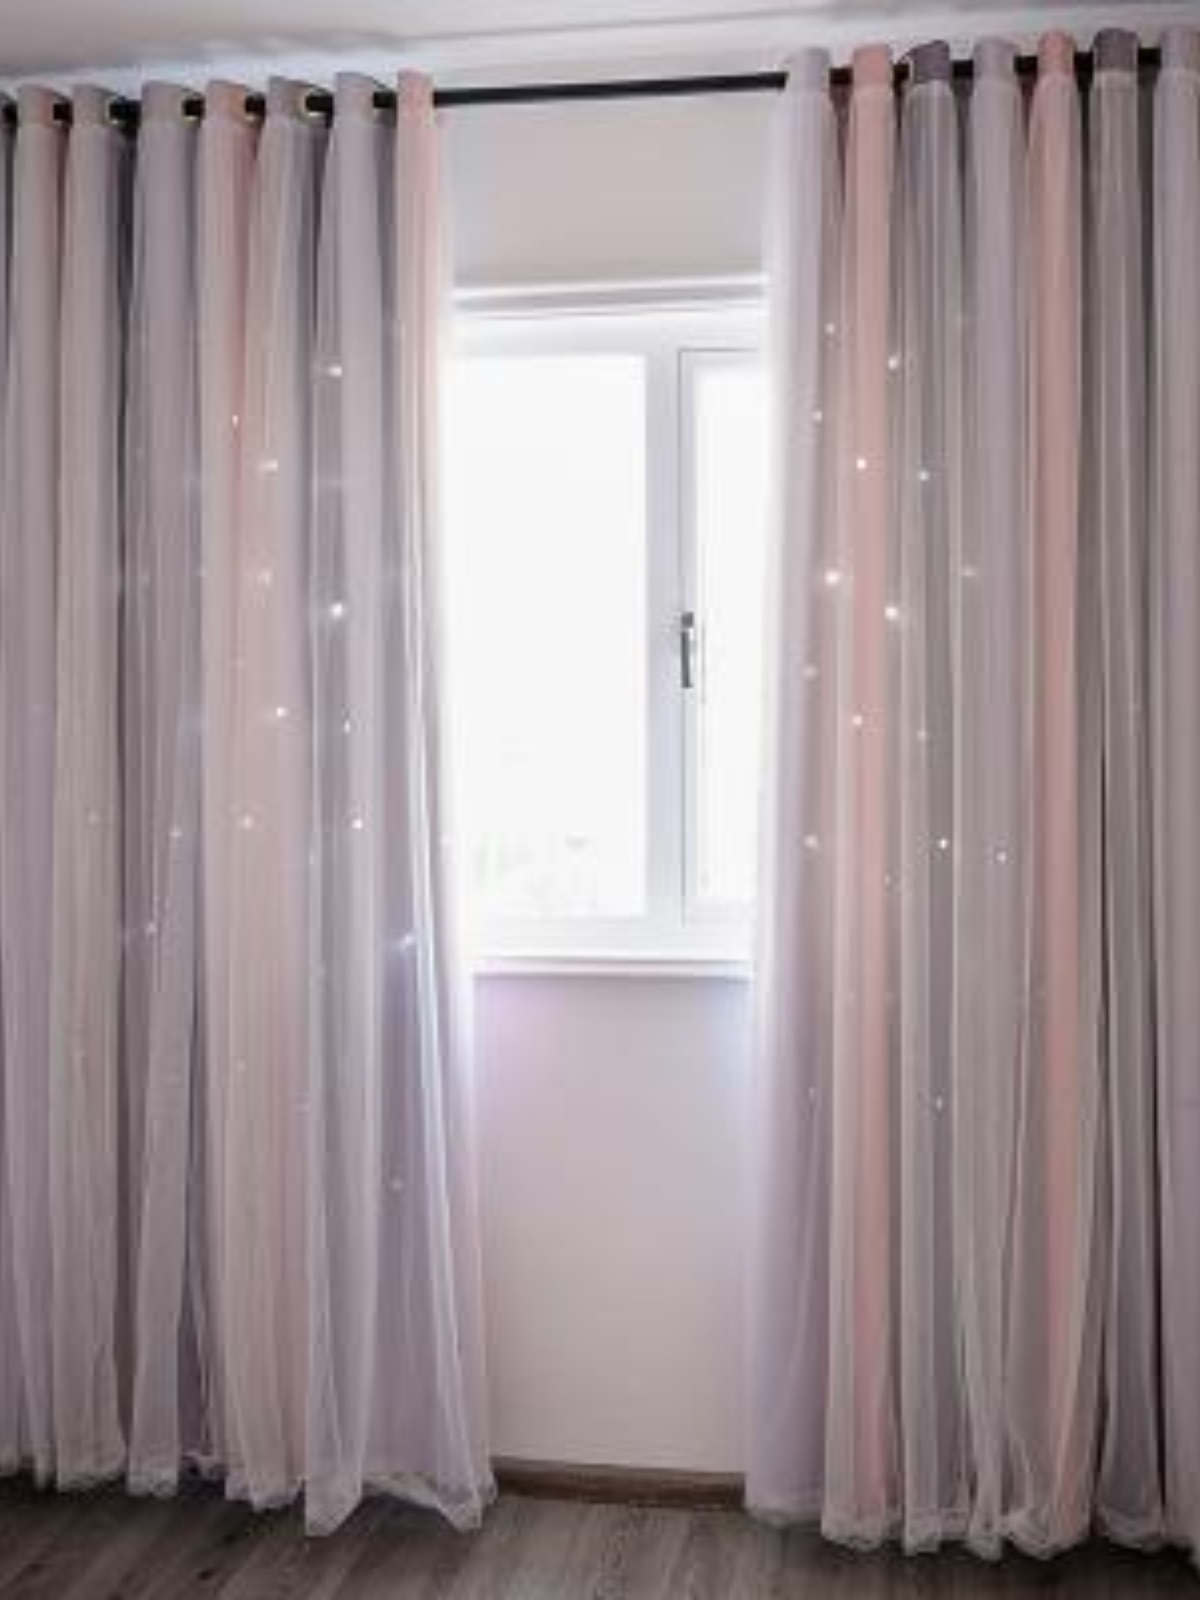 新2020年遮光免打孔卧室窗帘安装新款布免卧室粉色涤纶房女孩套促